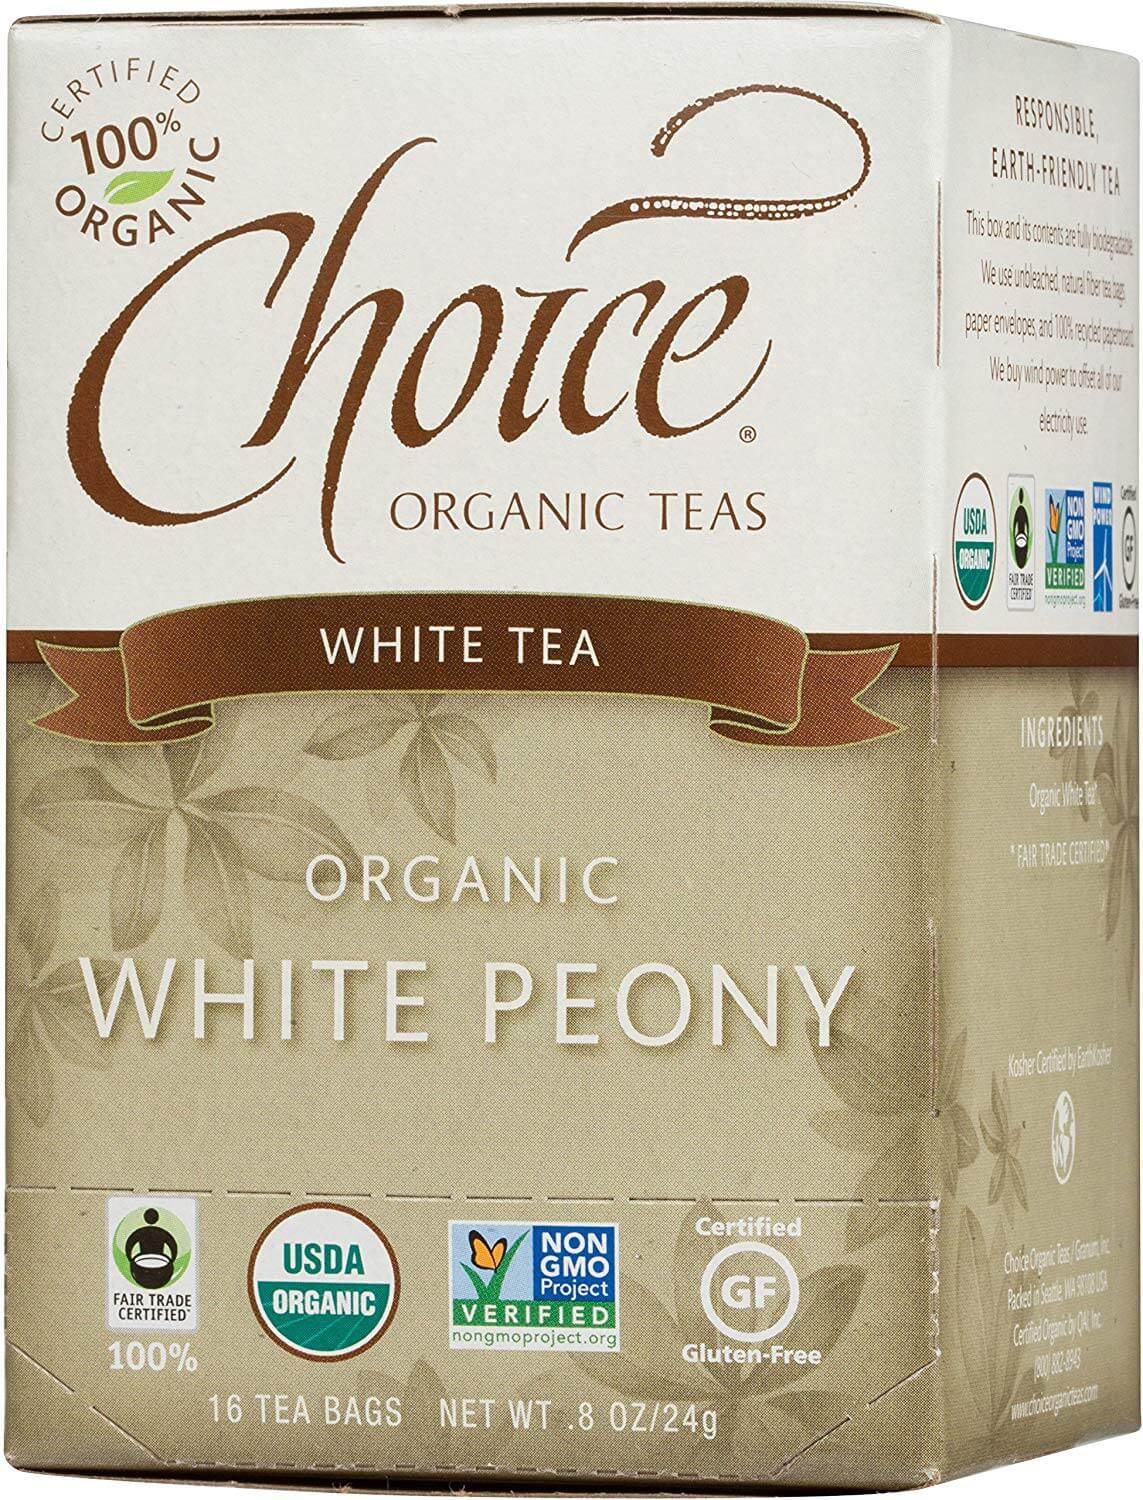 Choice Organic Teas - White Peony